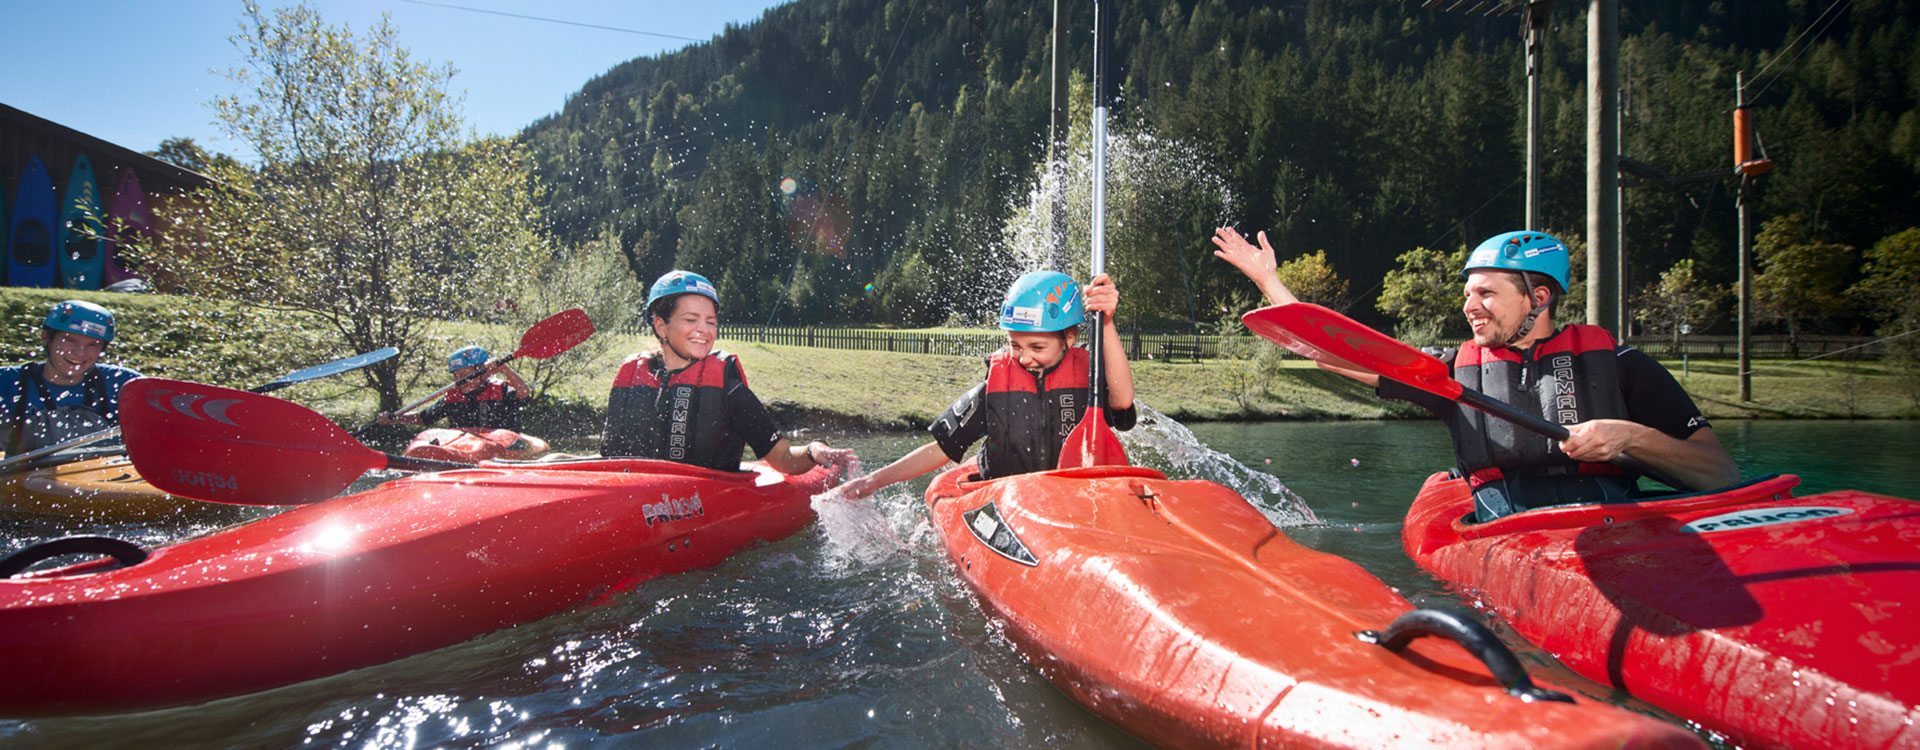 Kajak - Sommersportwoche in Flachau, Salzburger Land